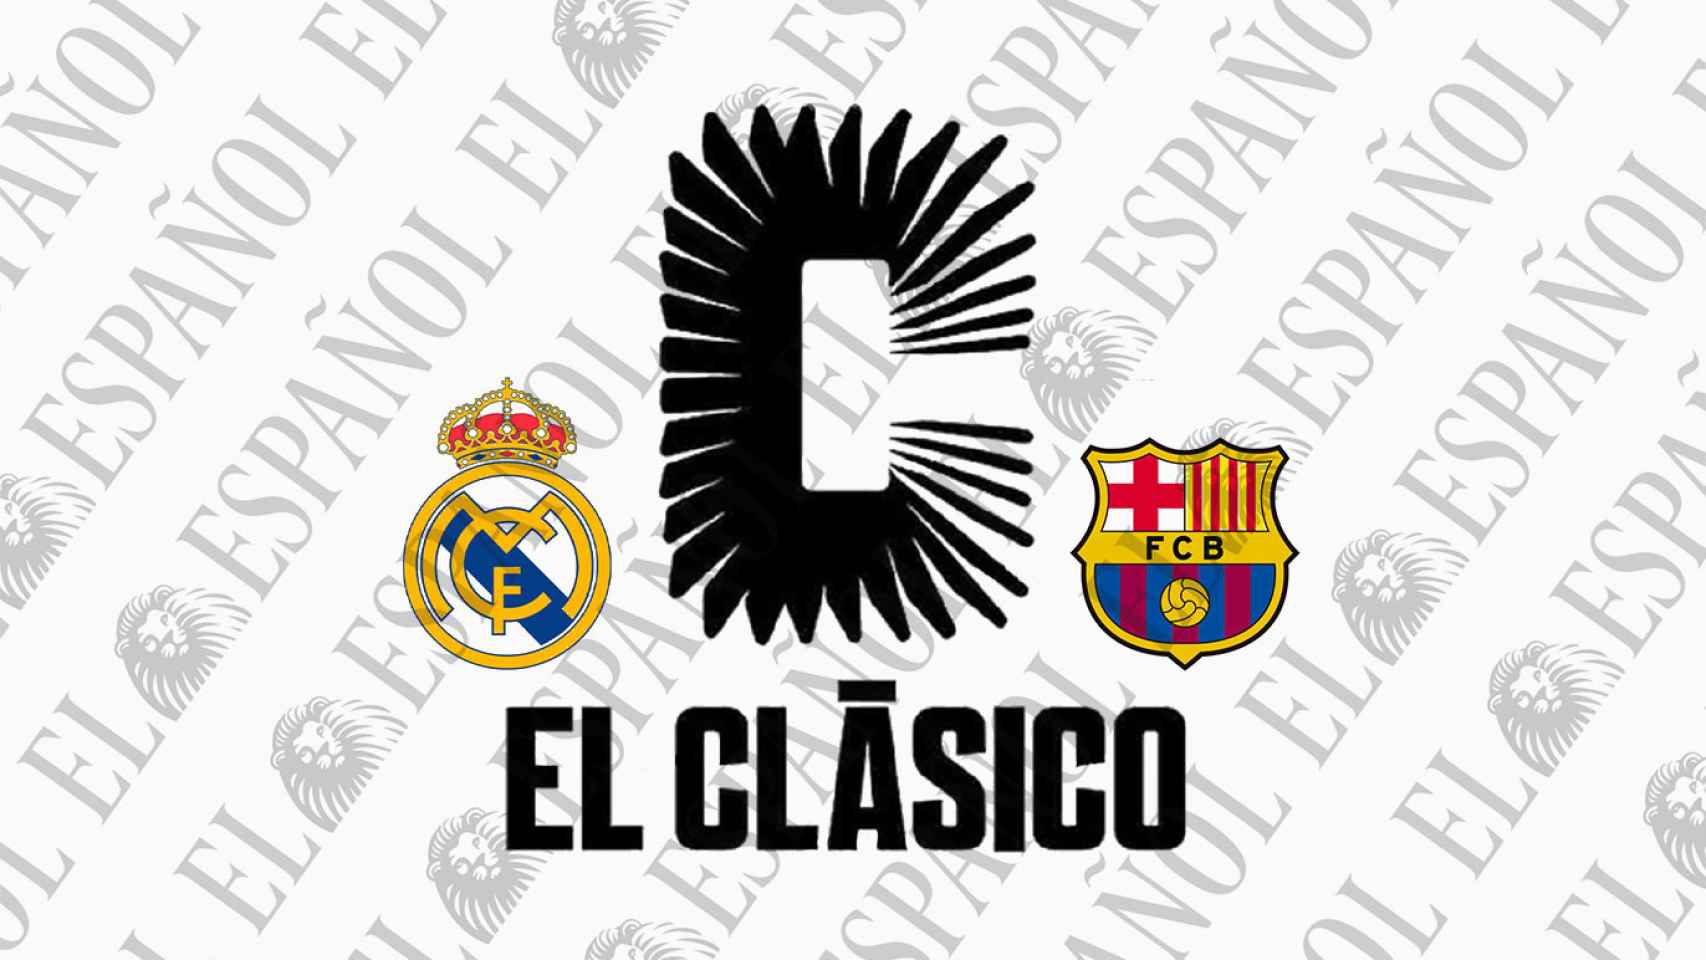 La marca 'El Clásico' registrada por el Real Madrid y FC Barcelona